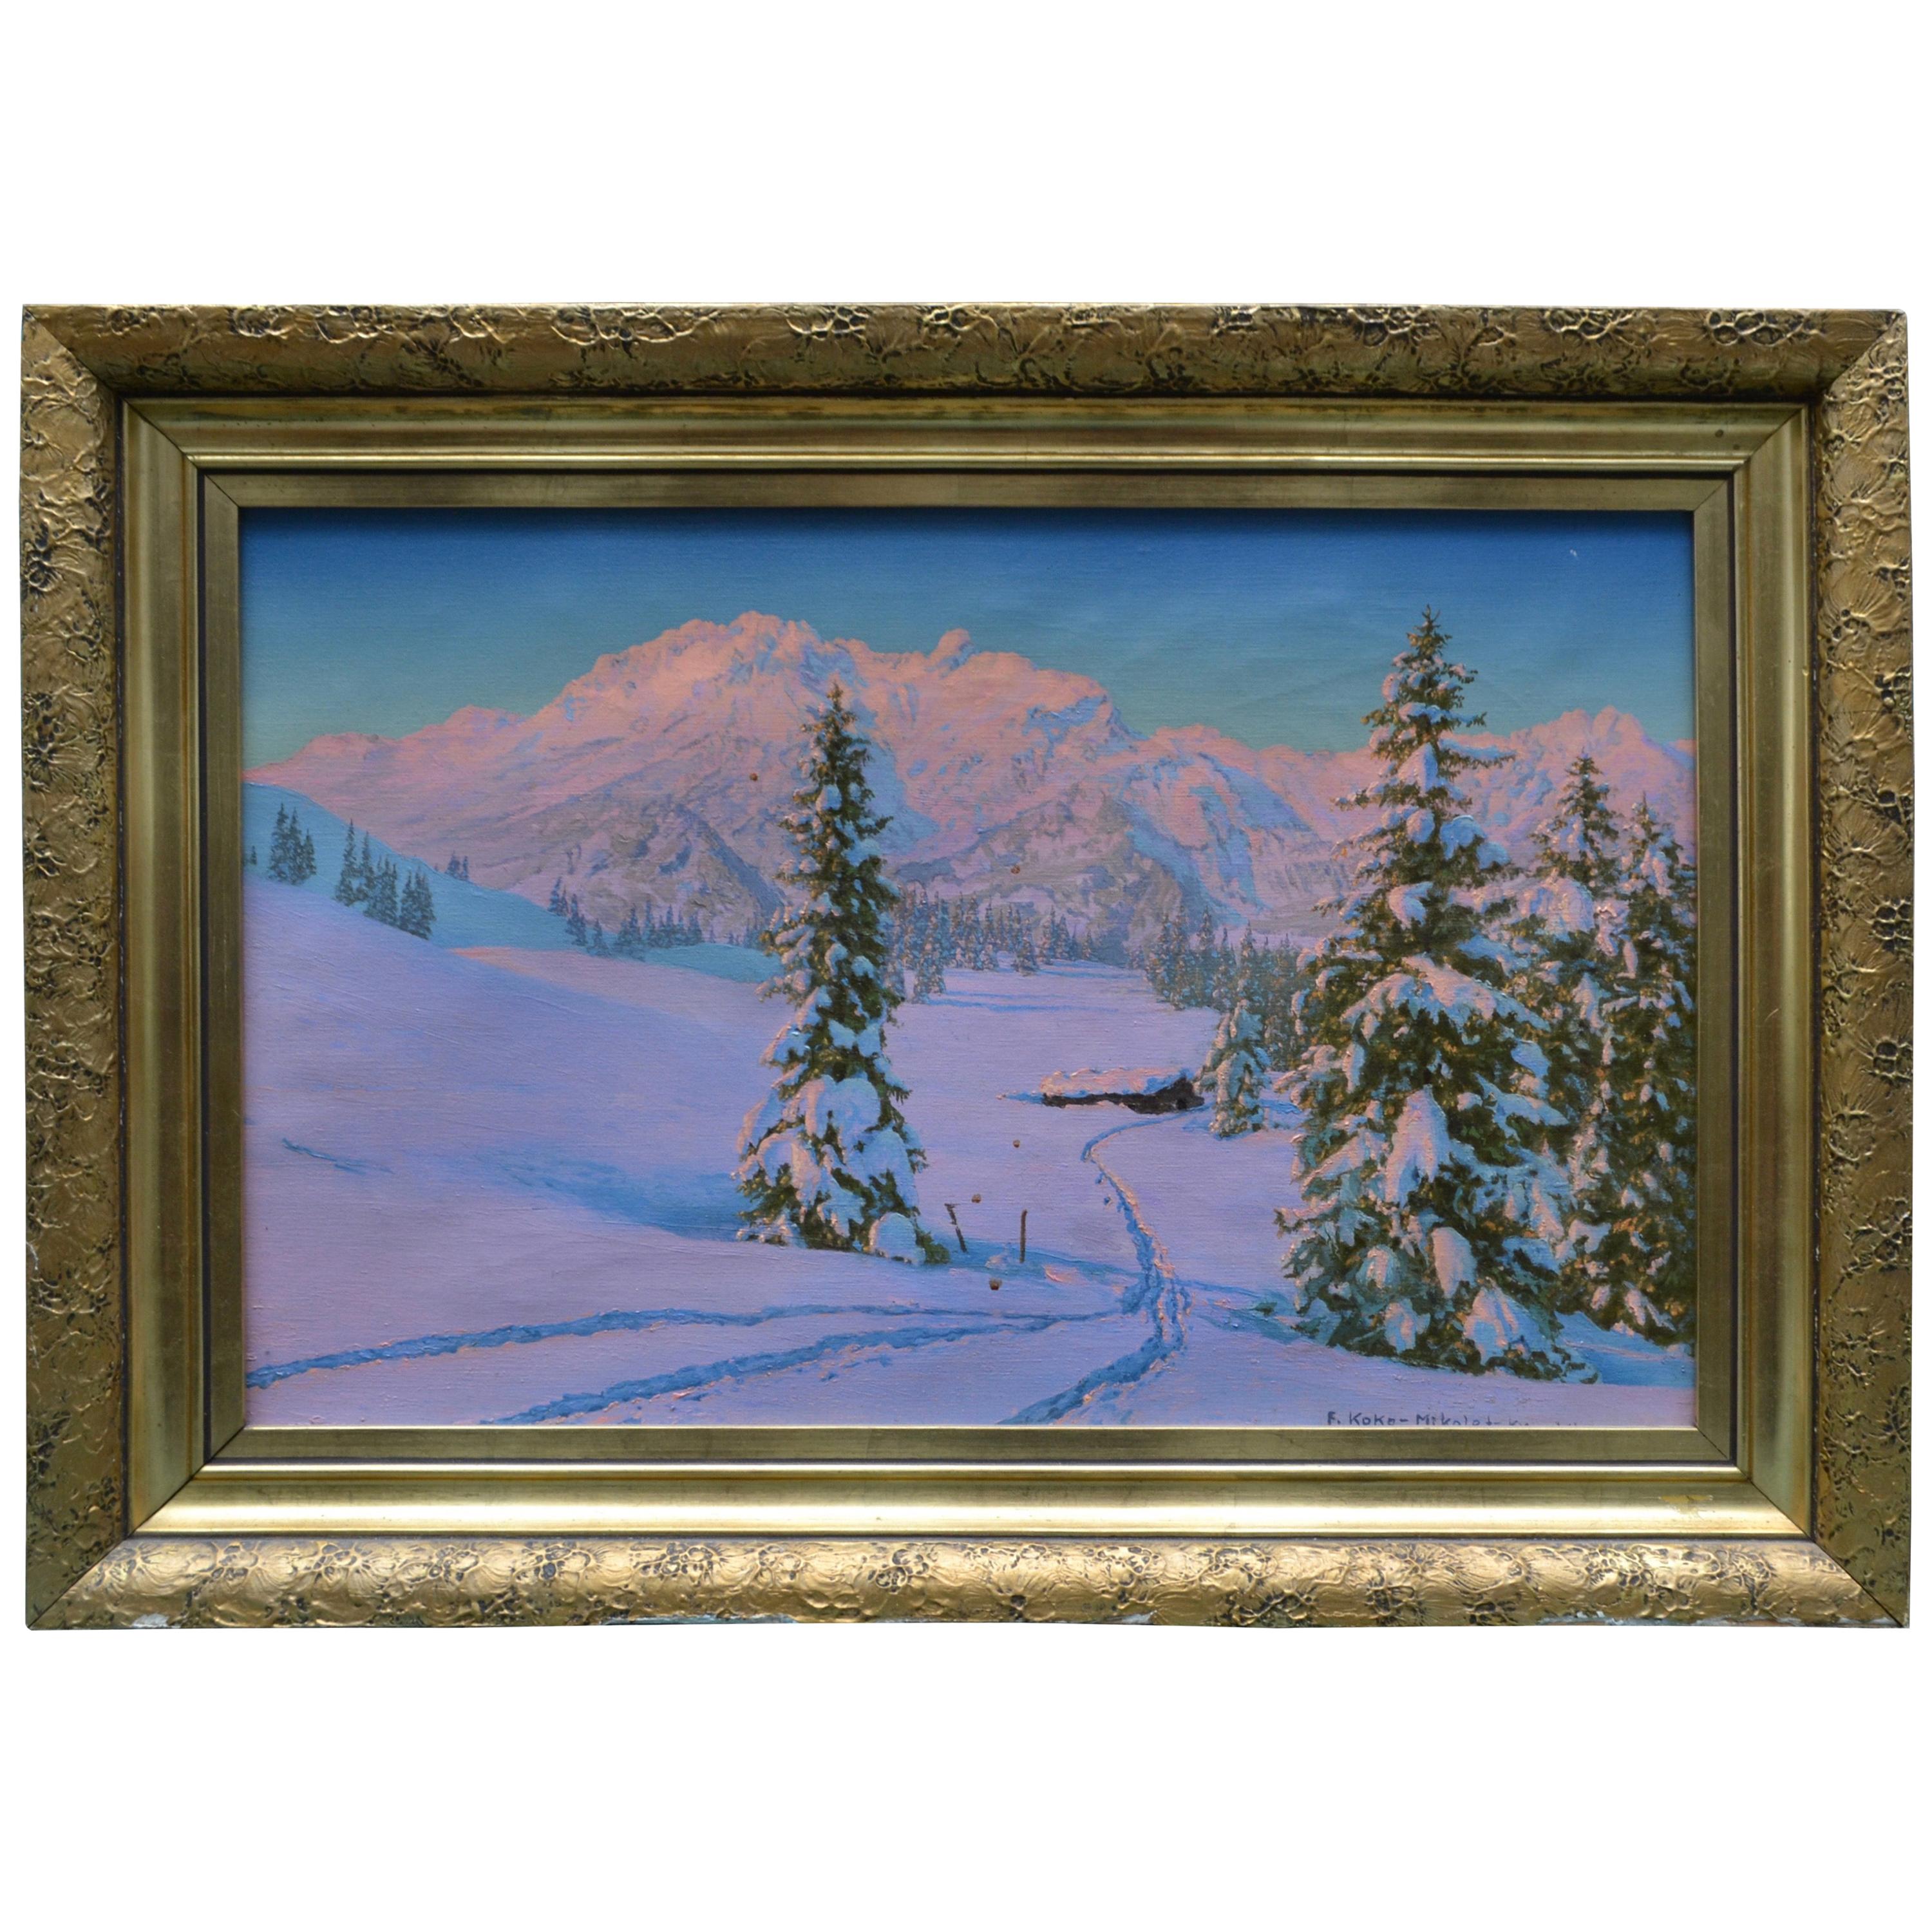 Alpine Winter Scene by Austrian Artist Friedrich Albin Koko-Mikoletzky